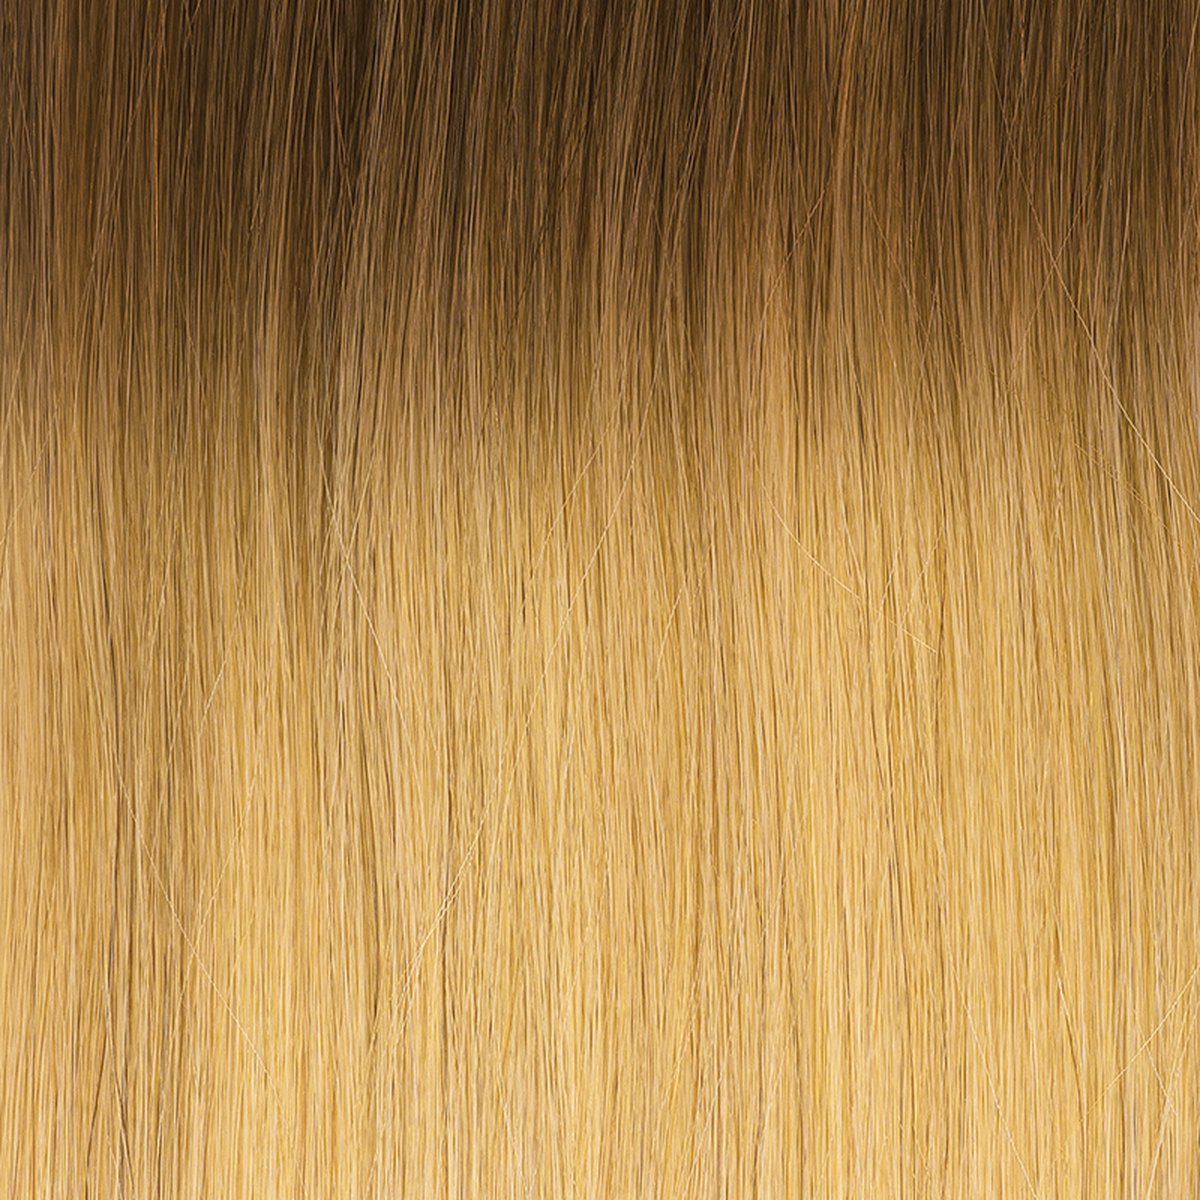 Balmain Hair Dress 55 cm. 100 % echt haar, kleur L.A. een mooie mix van donkerblonde-lichtbruine tinten.